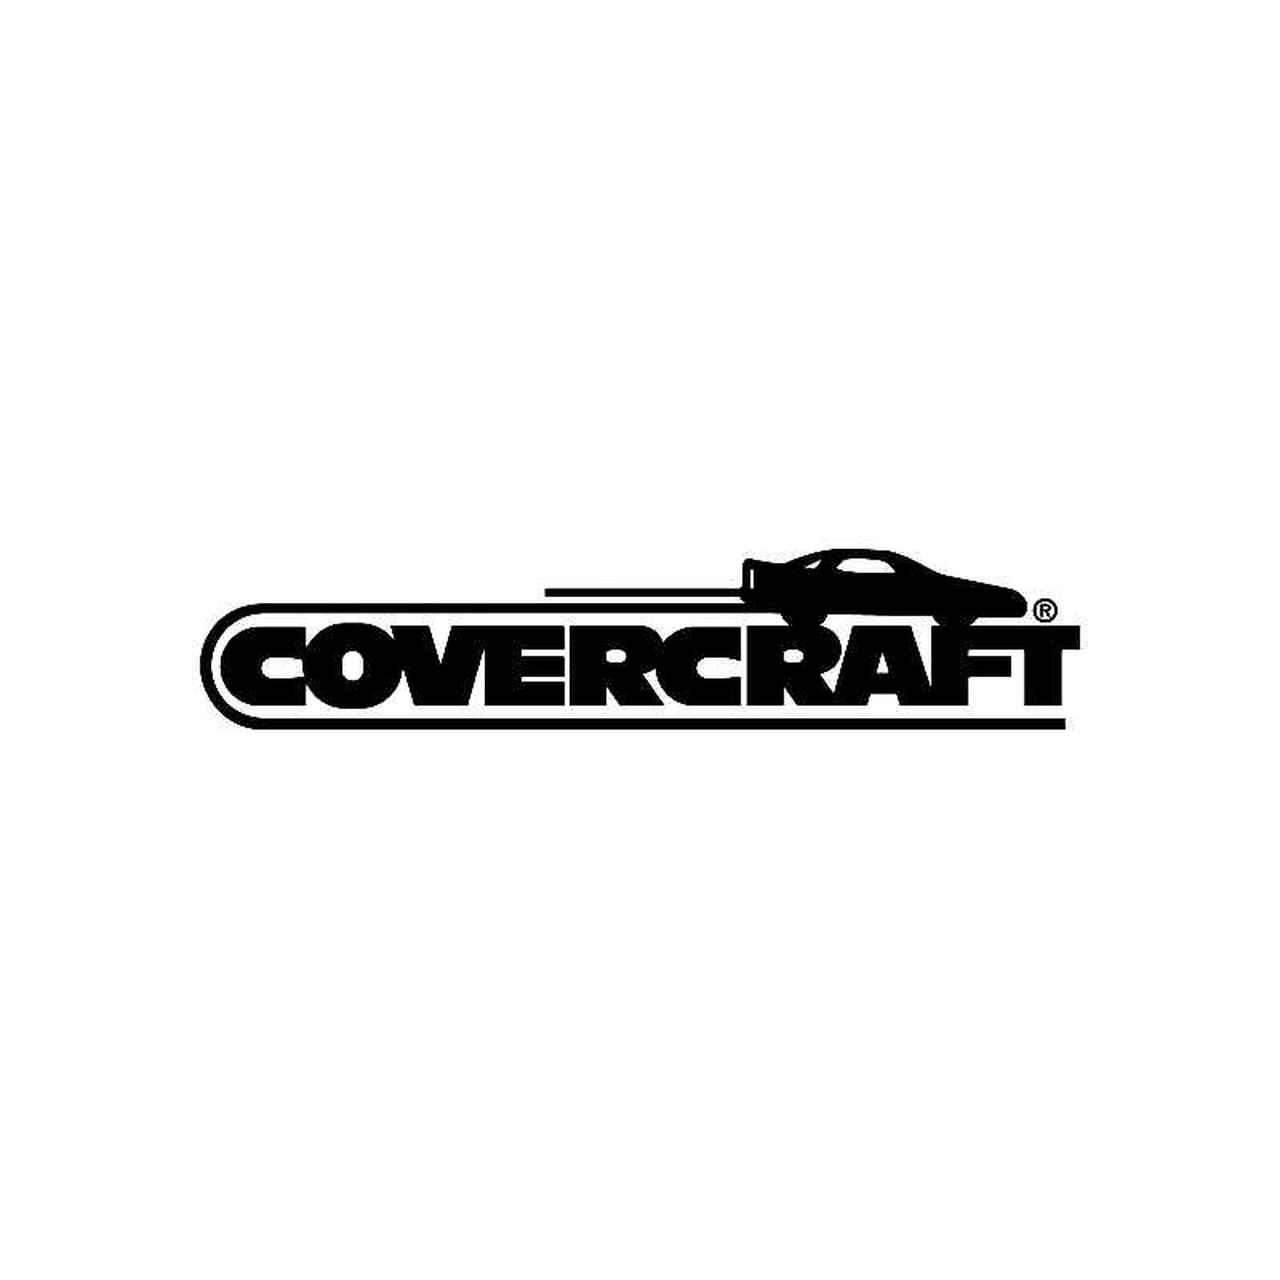 Covercraft Logo - Covercraft Logo Jdm Decal